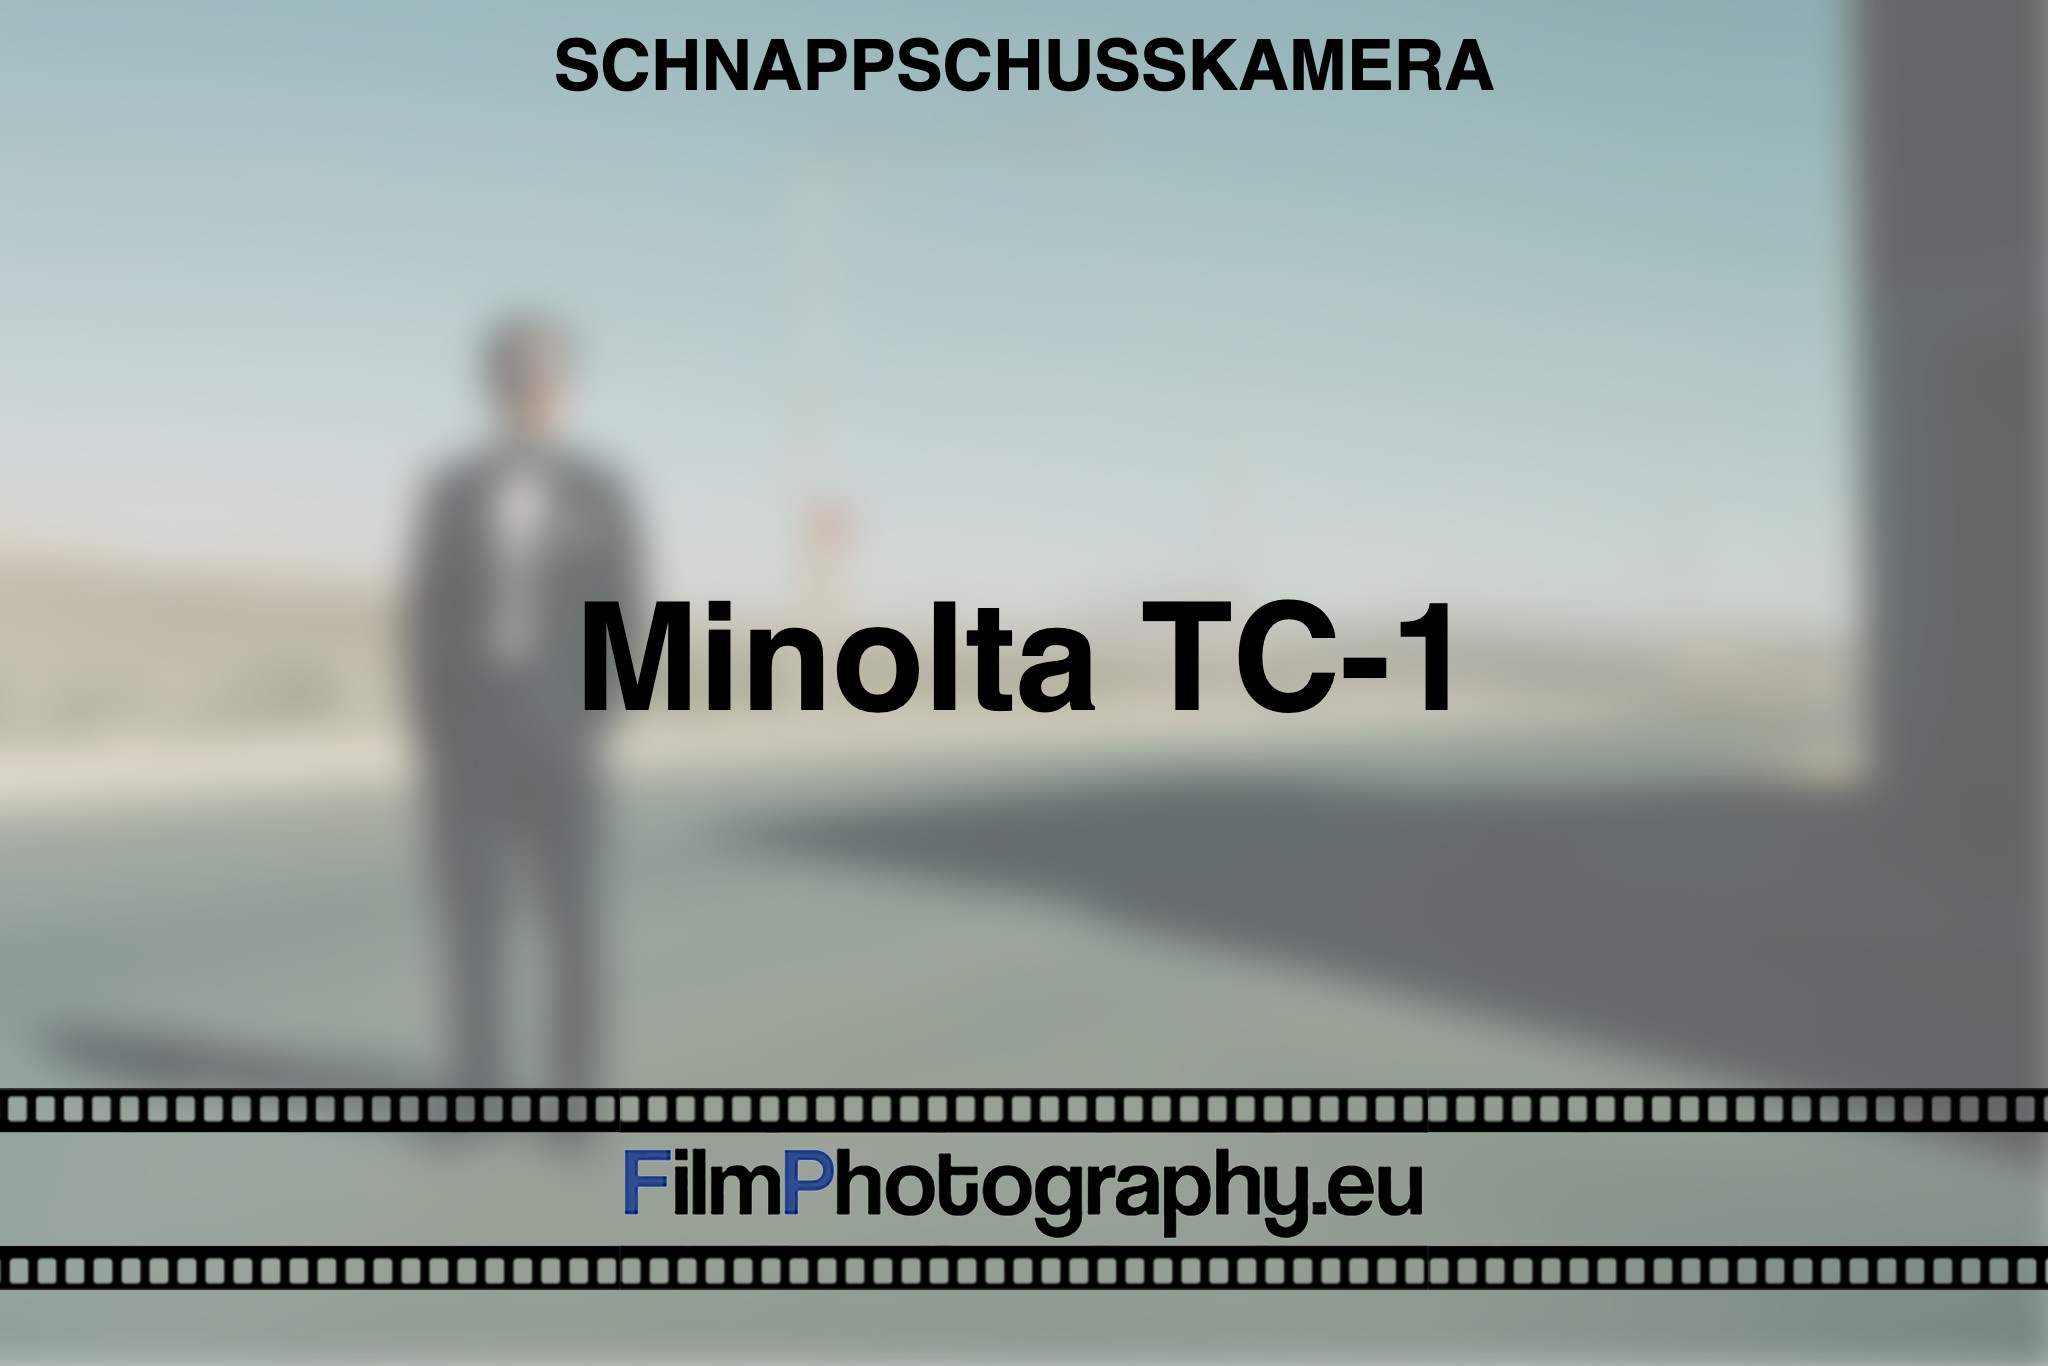 minolta-tc-1-schnappschusskamera-bnv